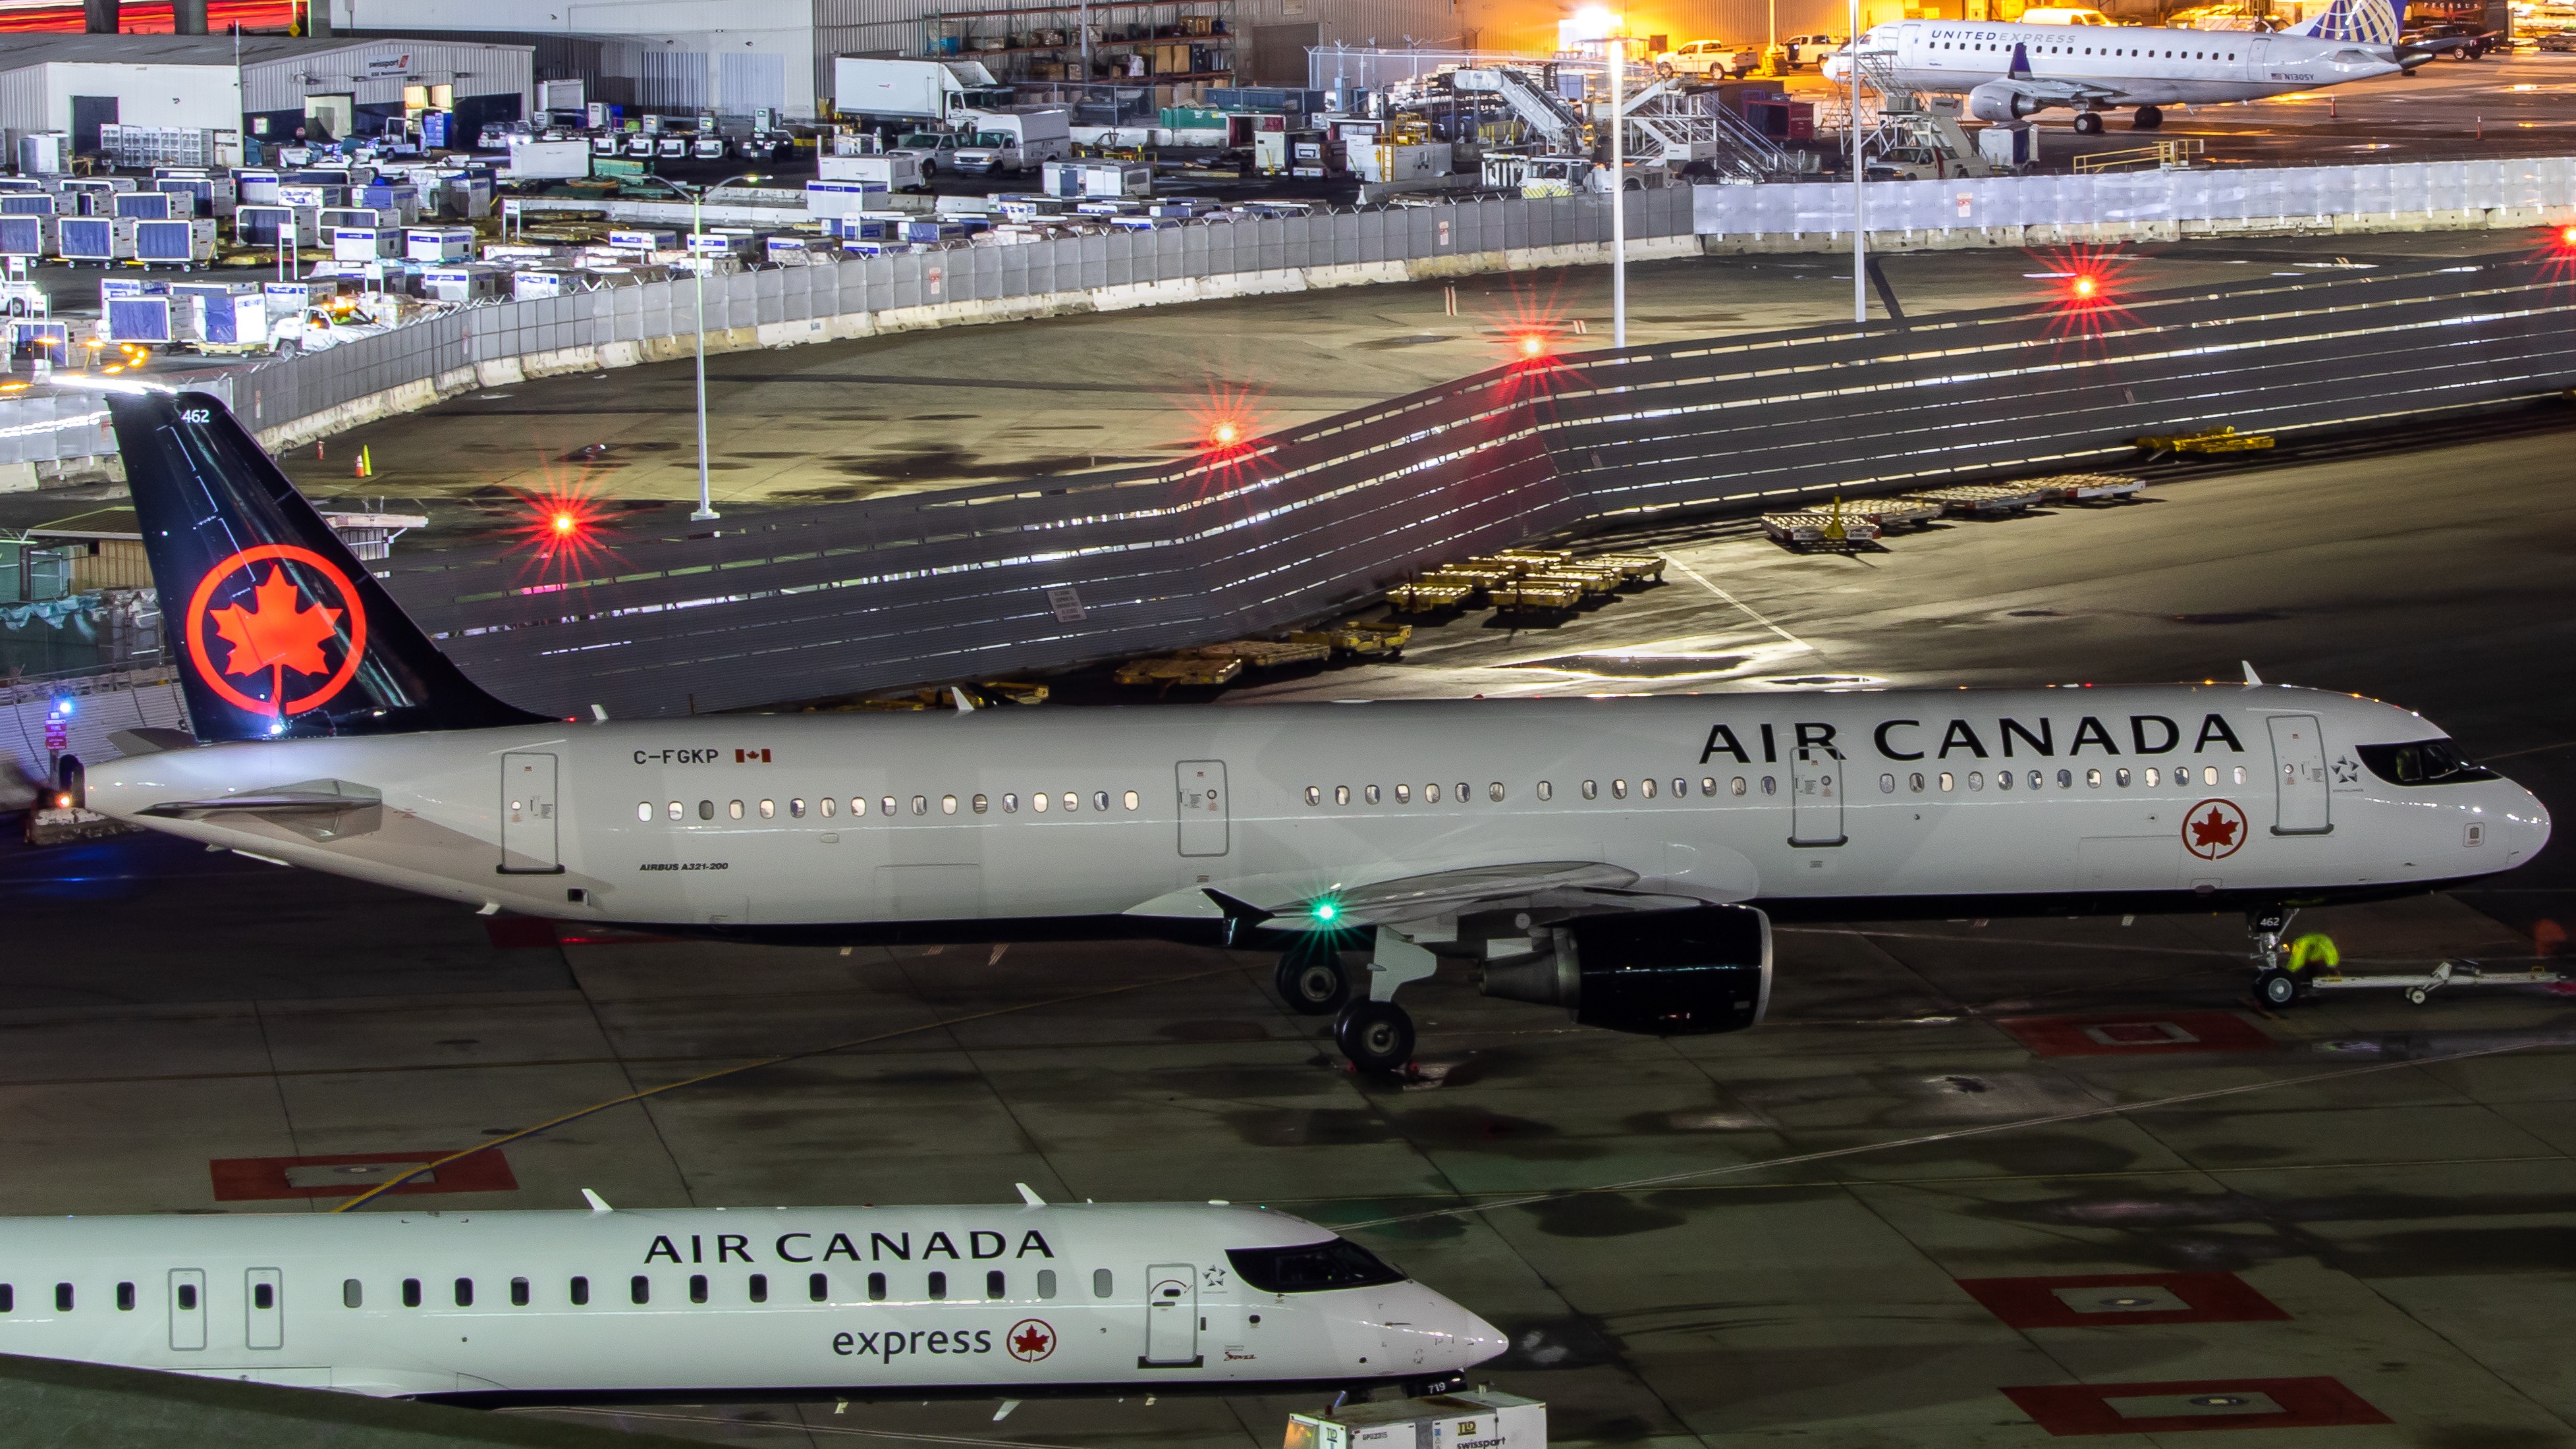 Photo of C-FGKP - Air Canada Airbus A321-200 by 